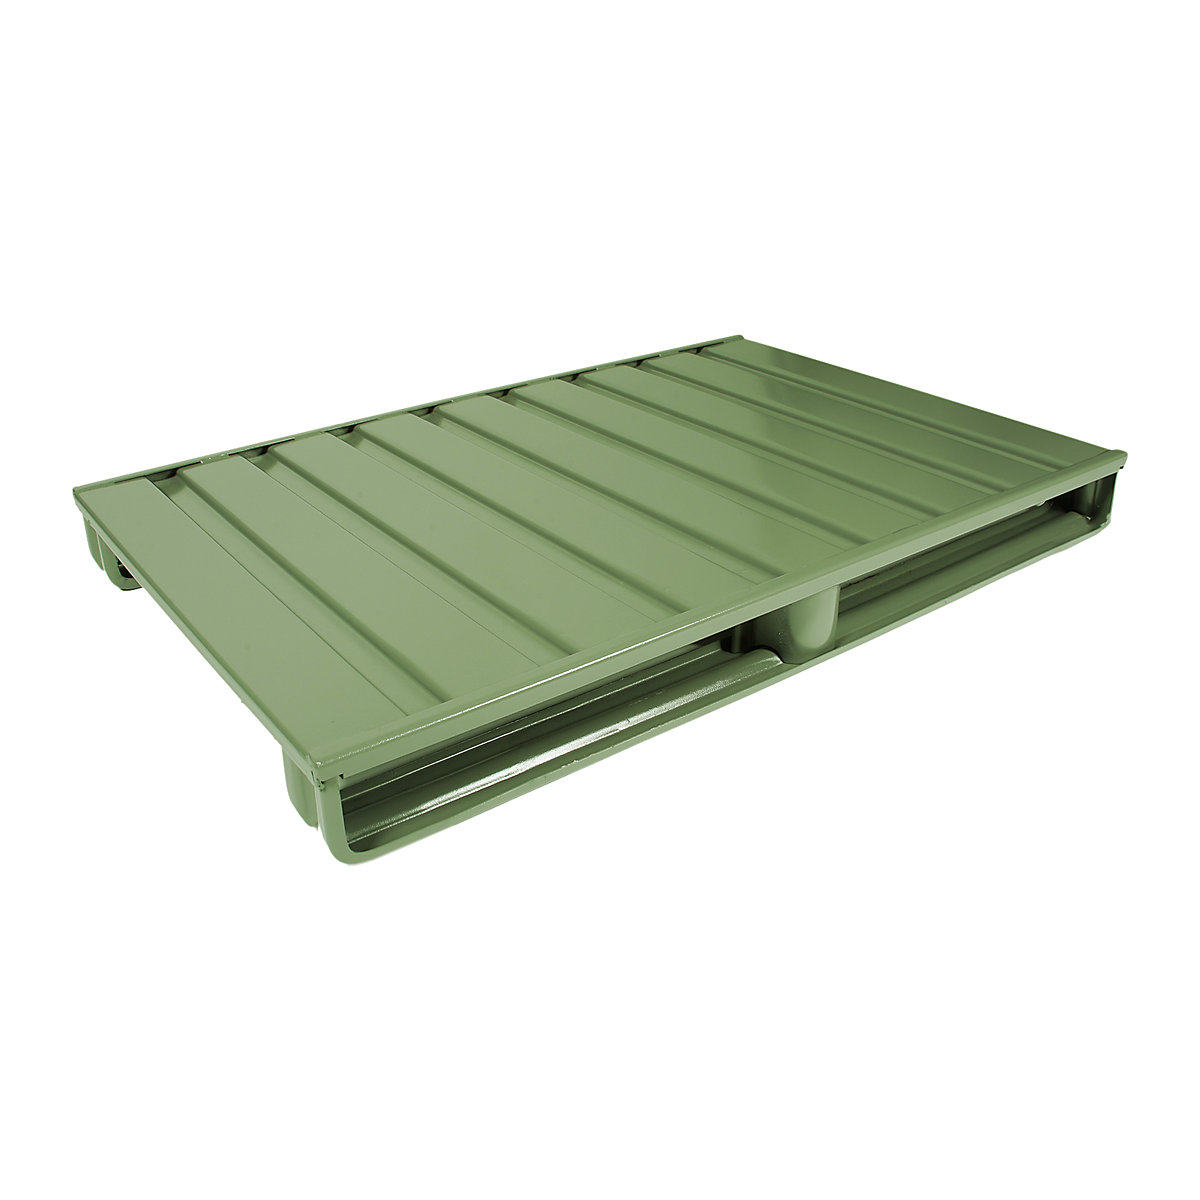 Ploska jeklena paleta – Heson, DxŠ 1200 x 800 mm, nosilnost 2000 kg, reseda zelene barve-3